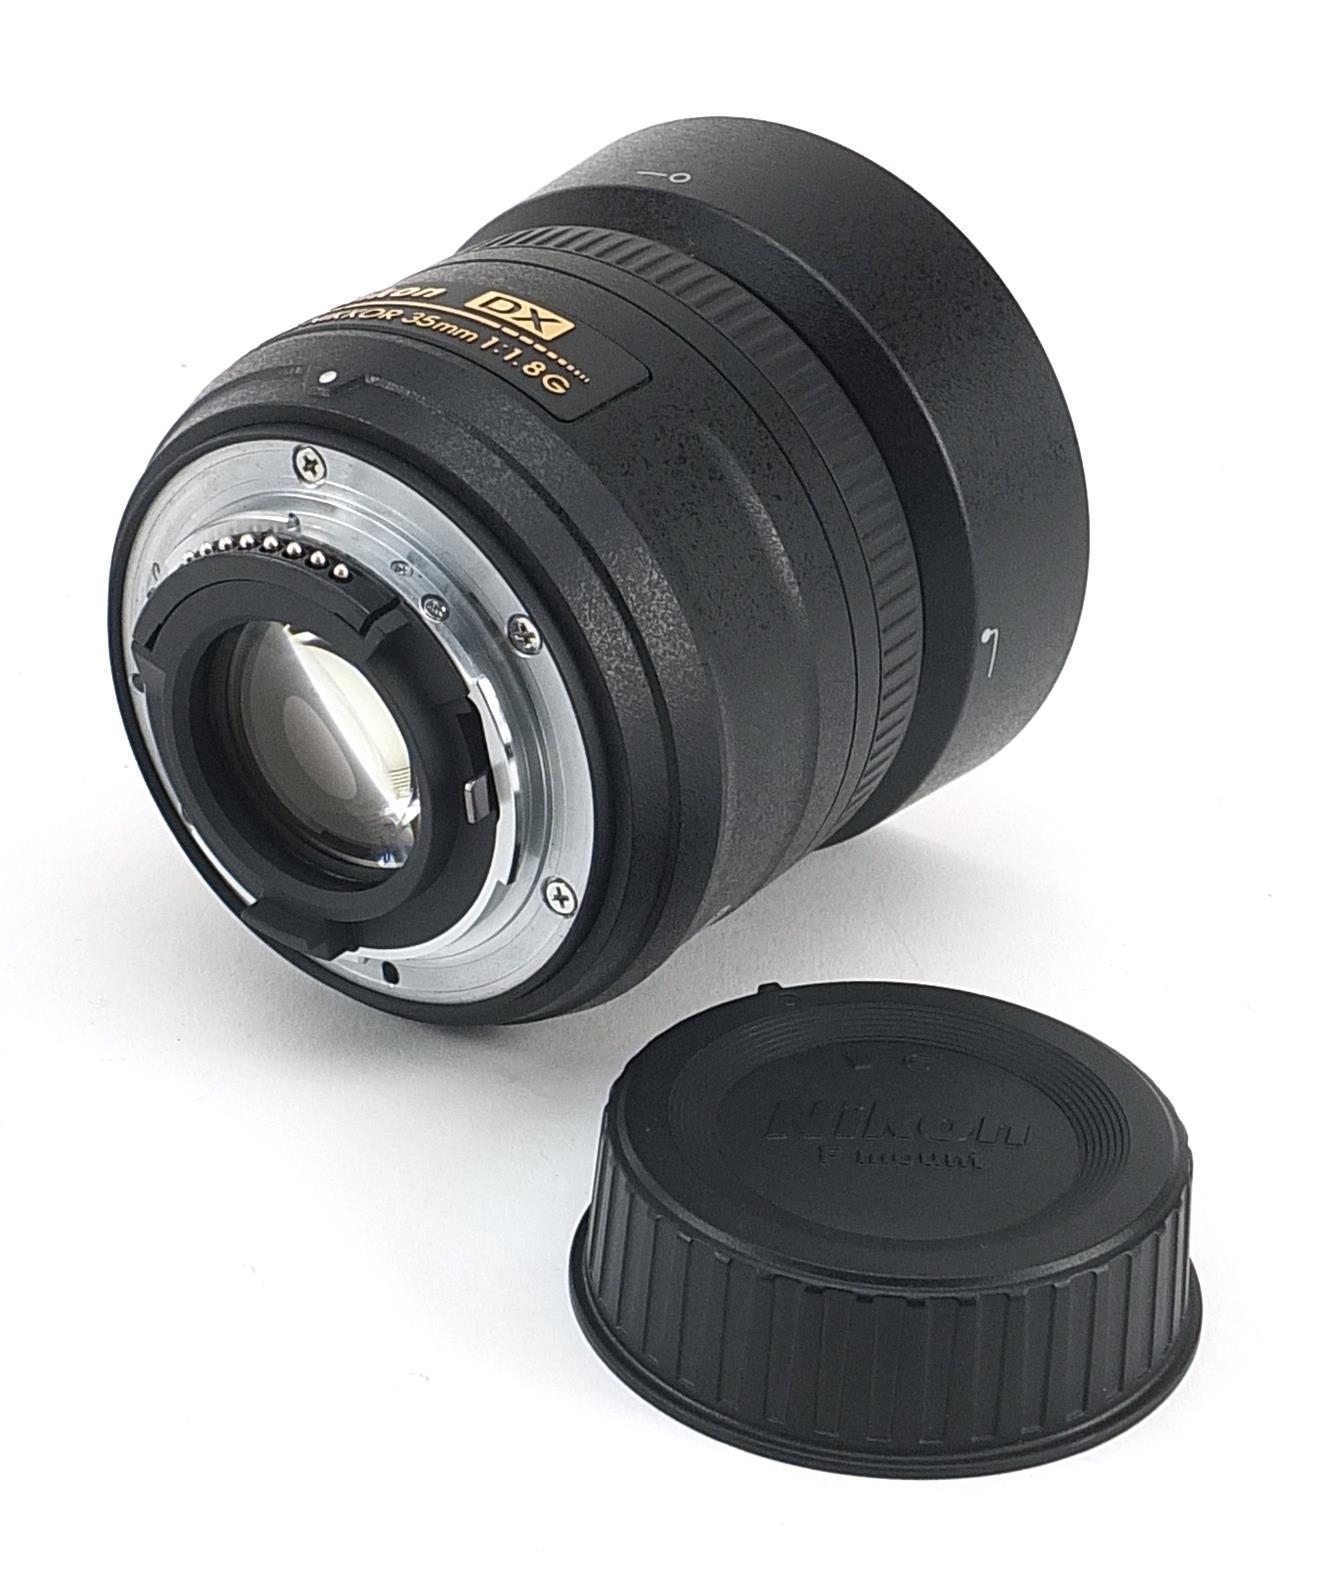 Nikon DX camera lens, AF-S Nikkor 35mm - Image 2 of 4